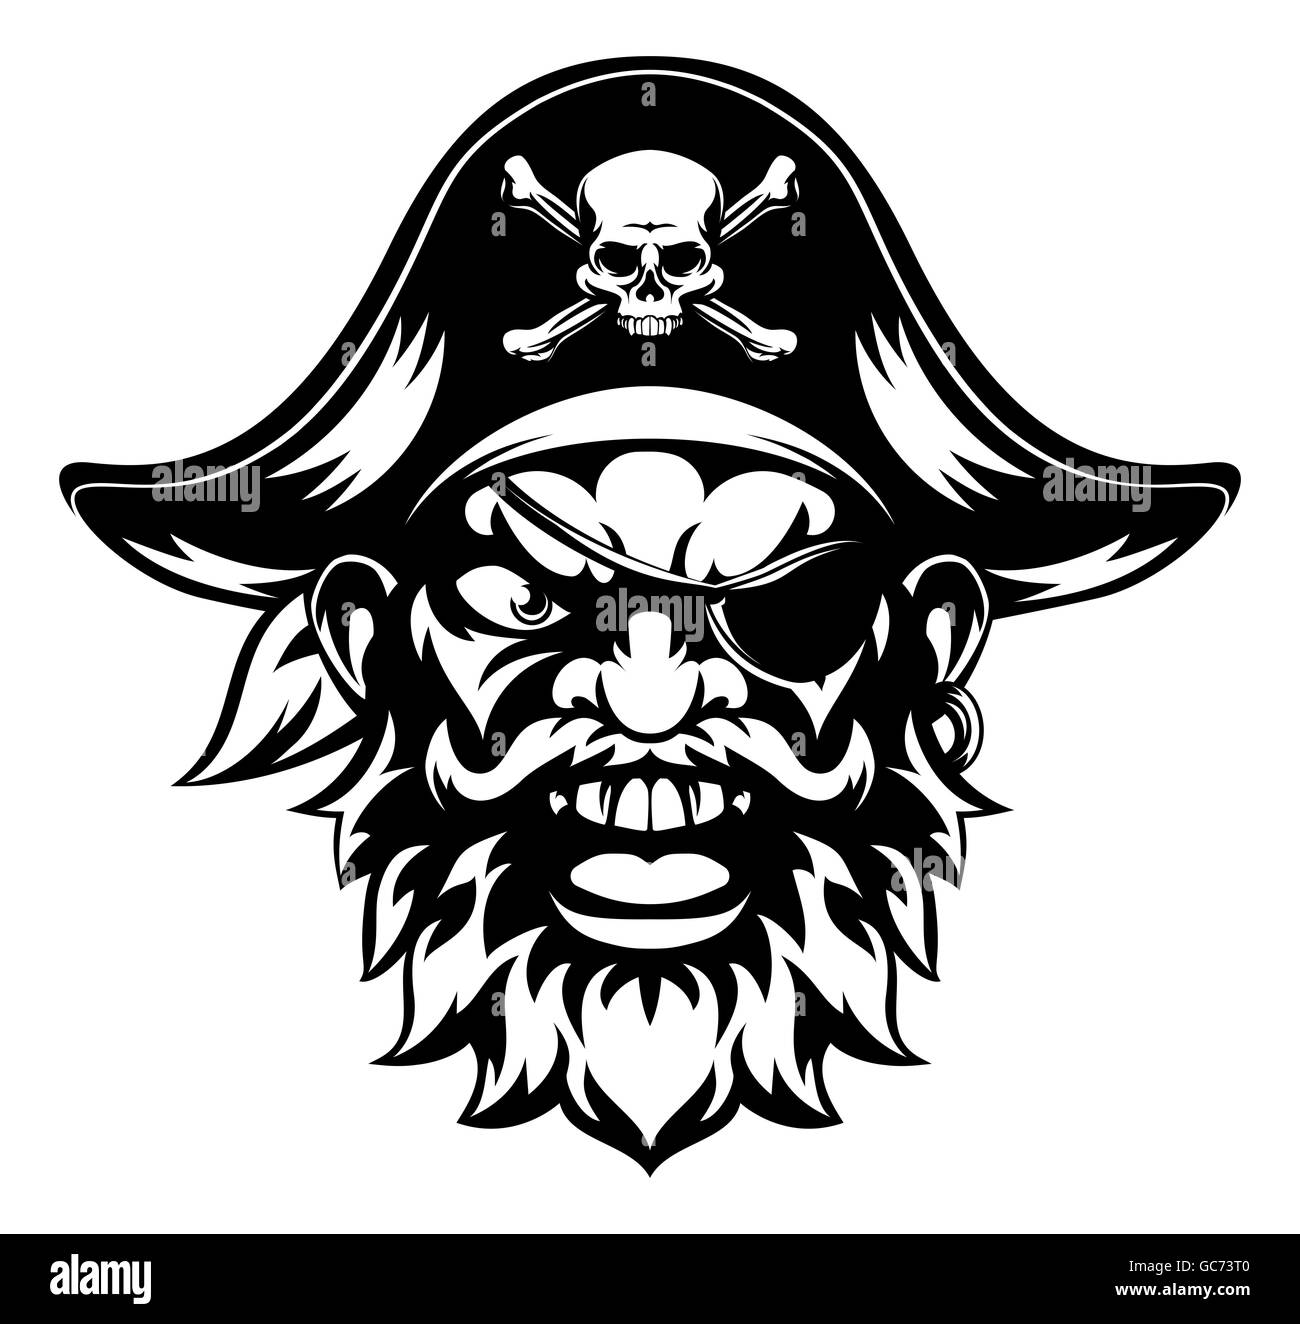 Una ilustración de una media buscando mascota deportiva carácter pirata Foto de stock